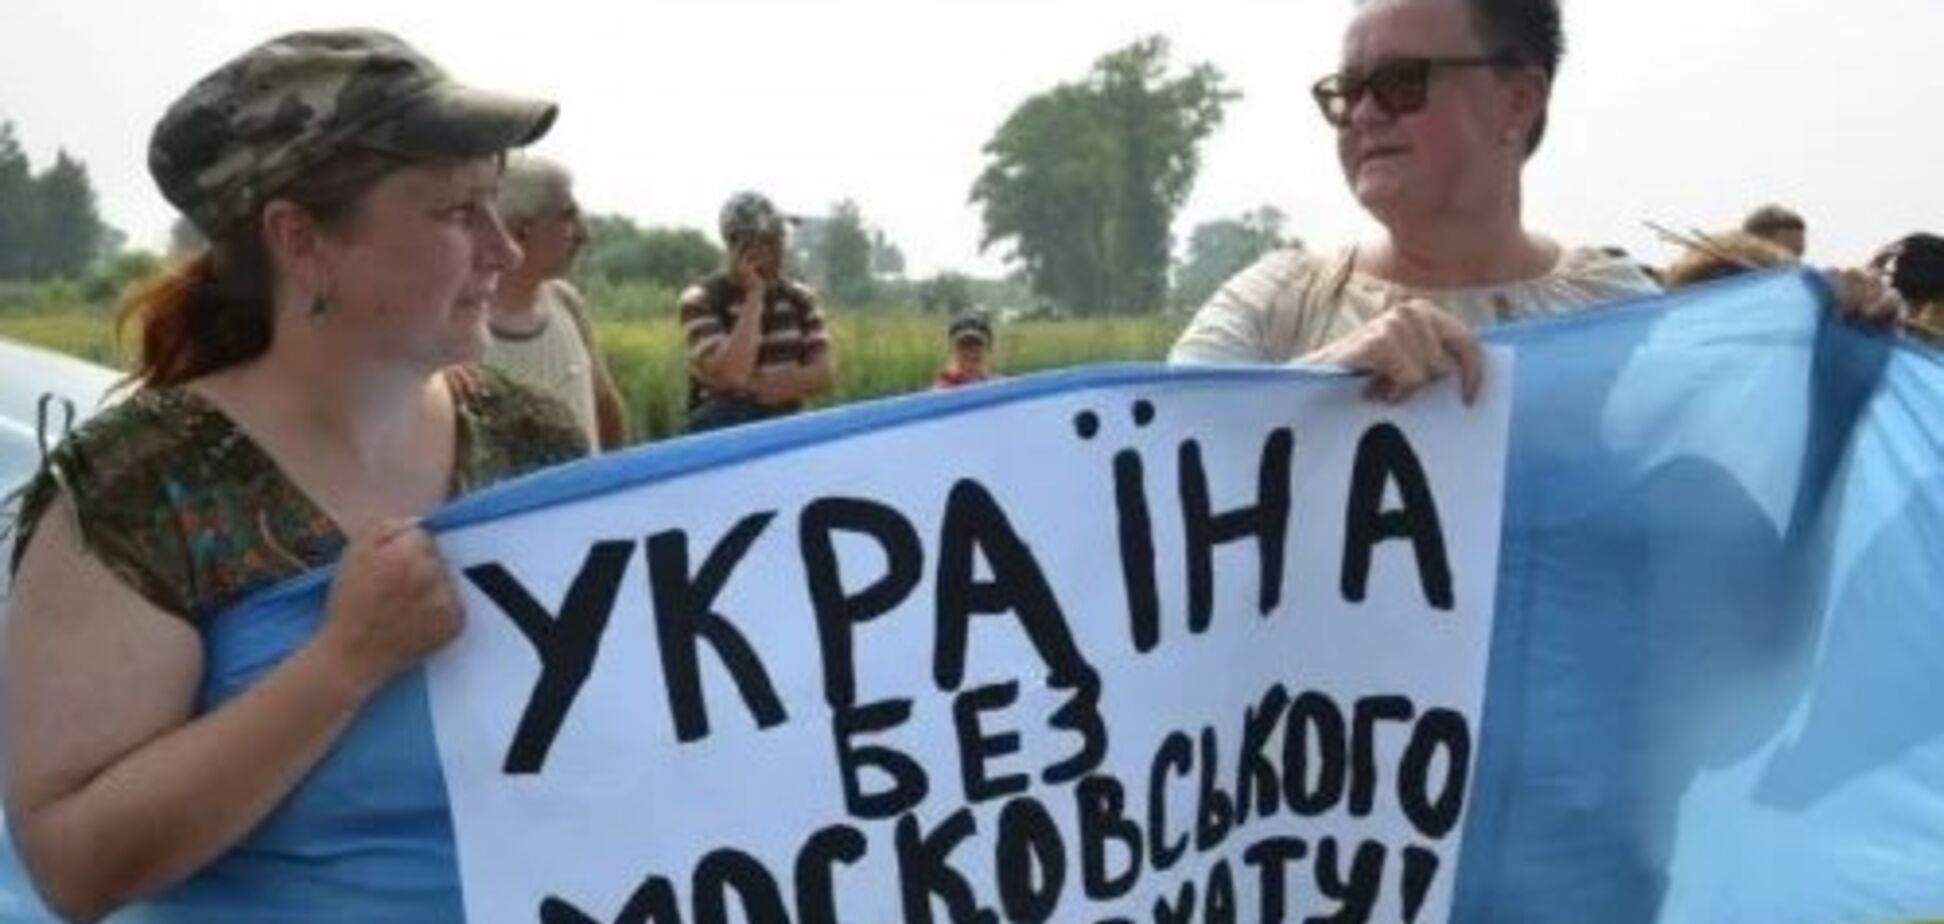 Київ має повне право на Томос: в Росії розставили крапки над 'і'